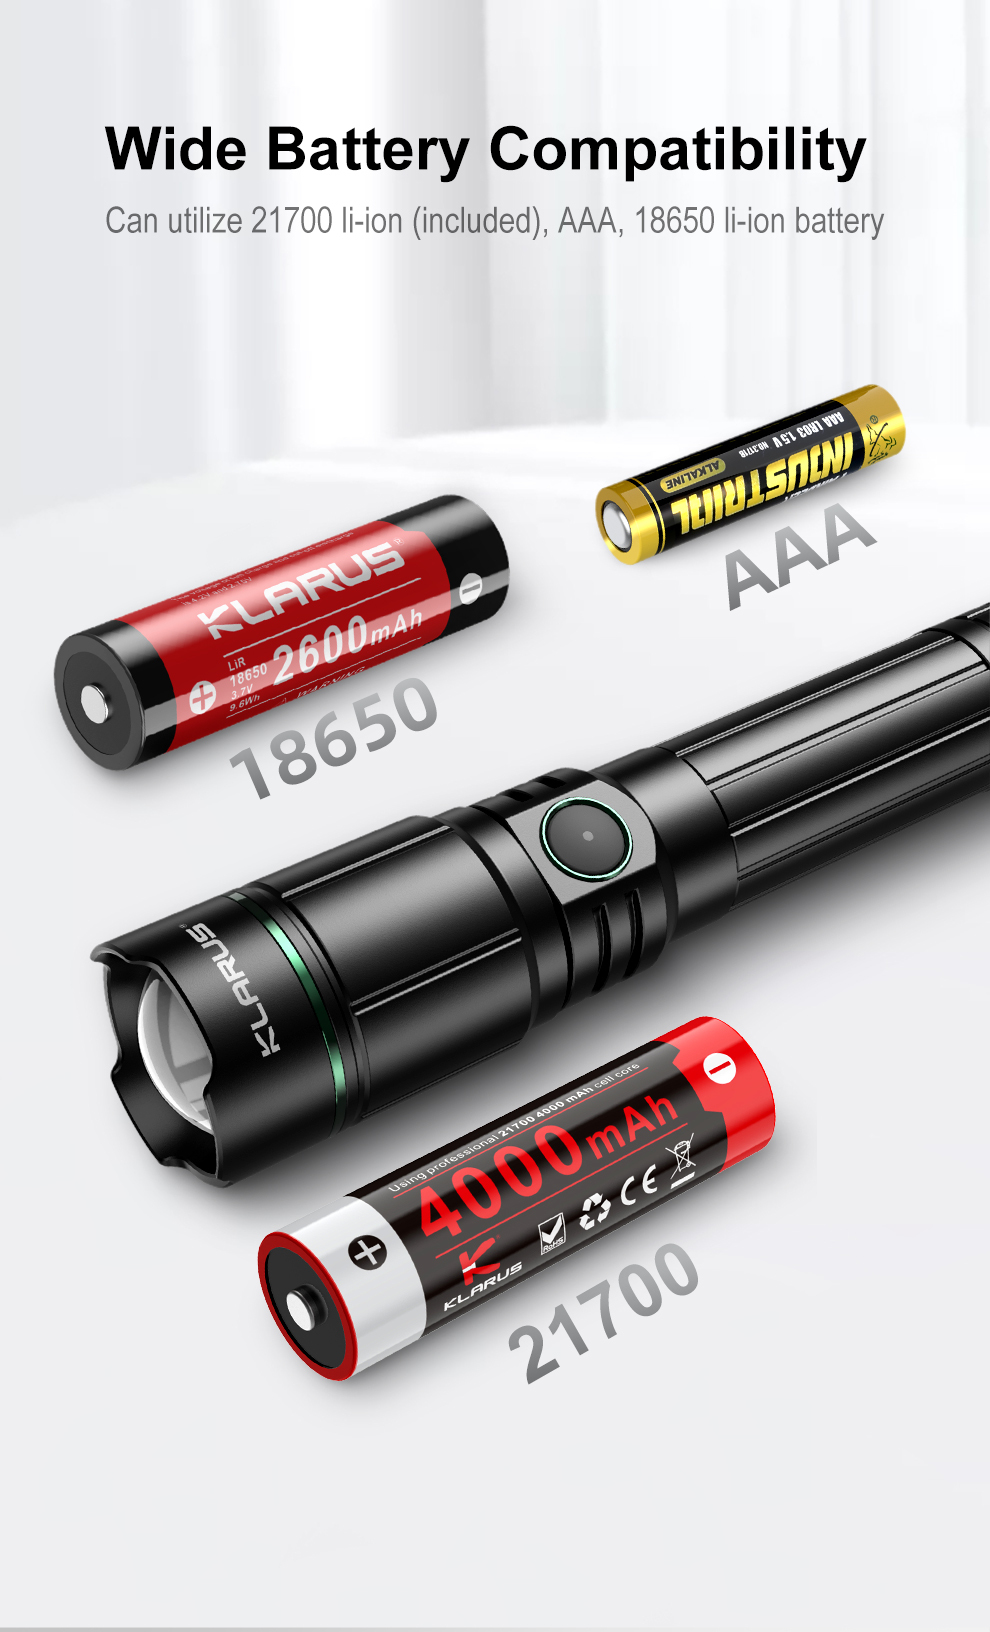 Klarus A2 Luminus SST-20 LED 1000 Lumens USB-C Rechargeable Focus Adjustable Searh Light